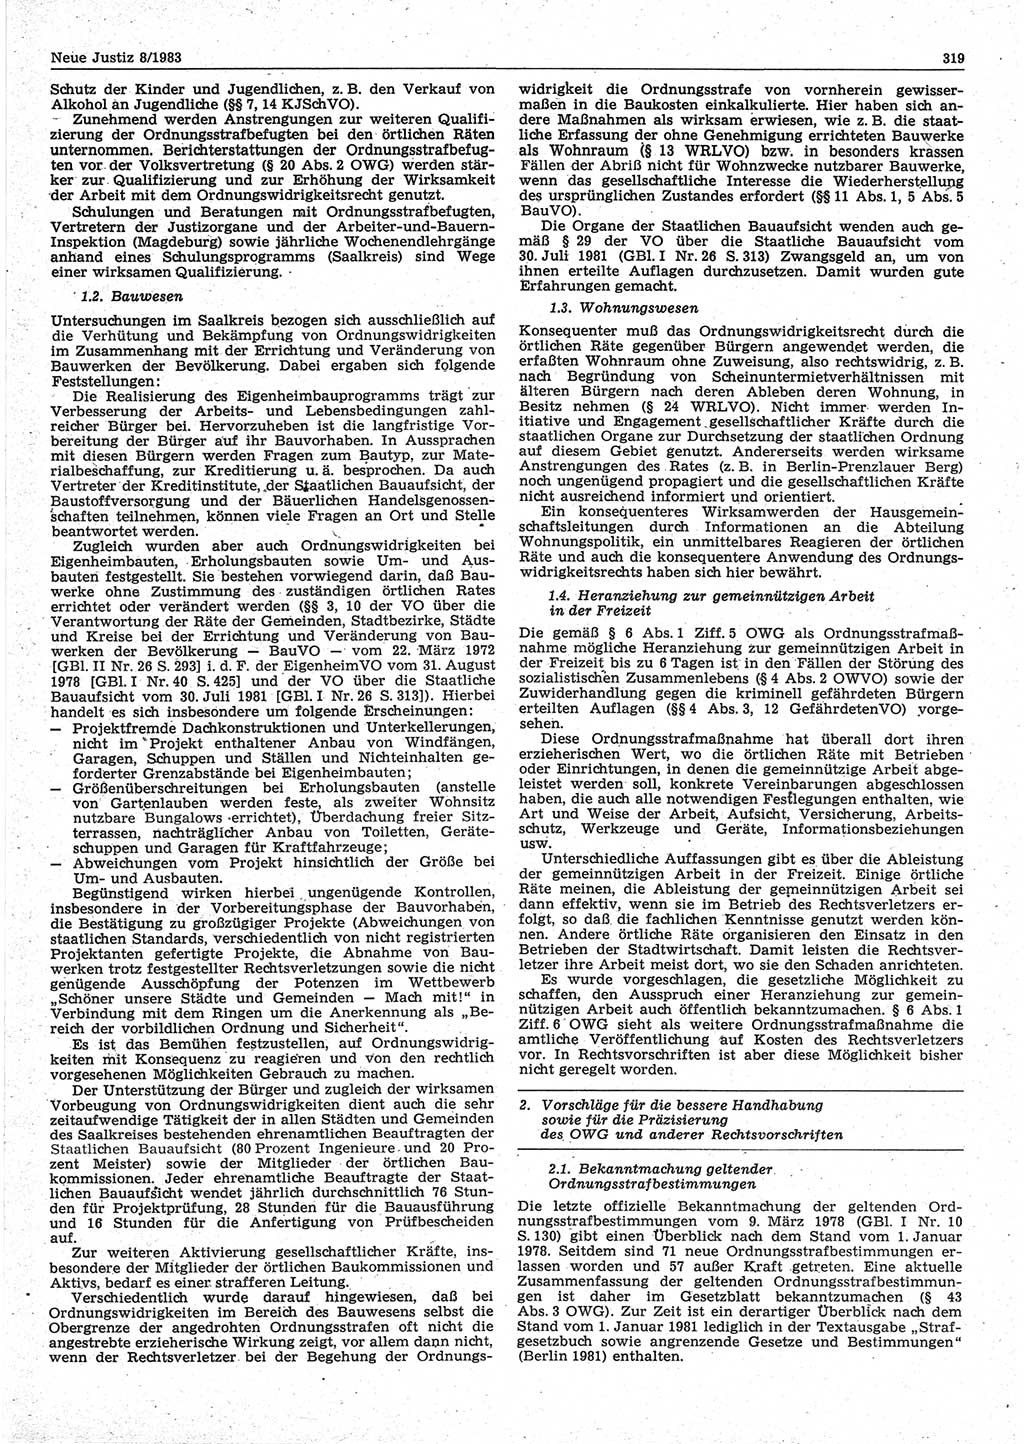 Neue Justiz (NJ), Zeitschrift für sozialistisches Recht und Gesetzlichkeit [Deutsche Demokratische Republik (DDR)], 37. Jahrgang 1983, Seite 319 (NJ DDR 1983, S. 319)